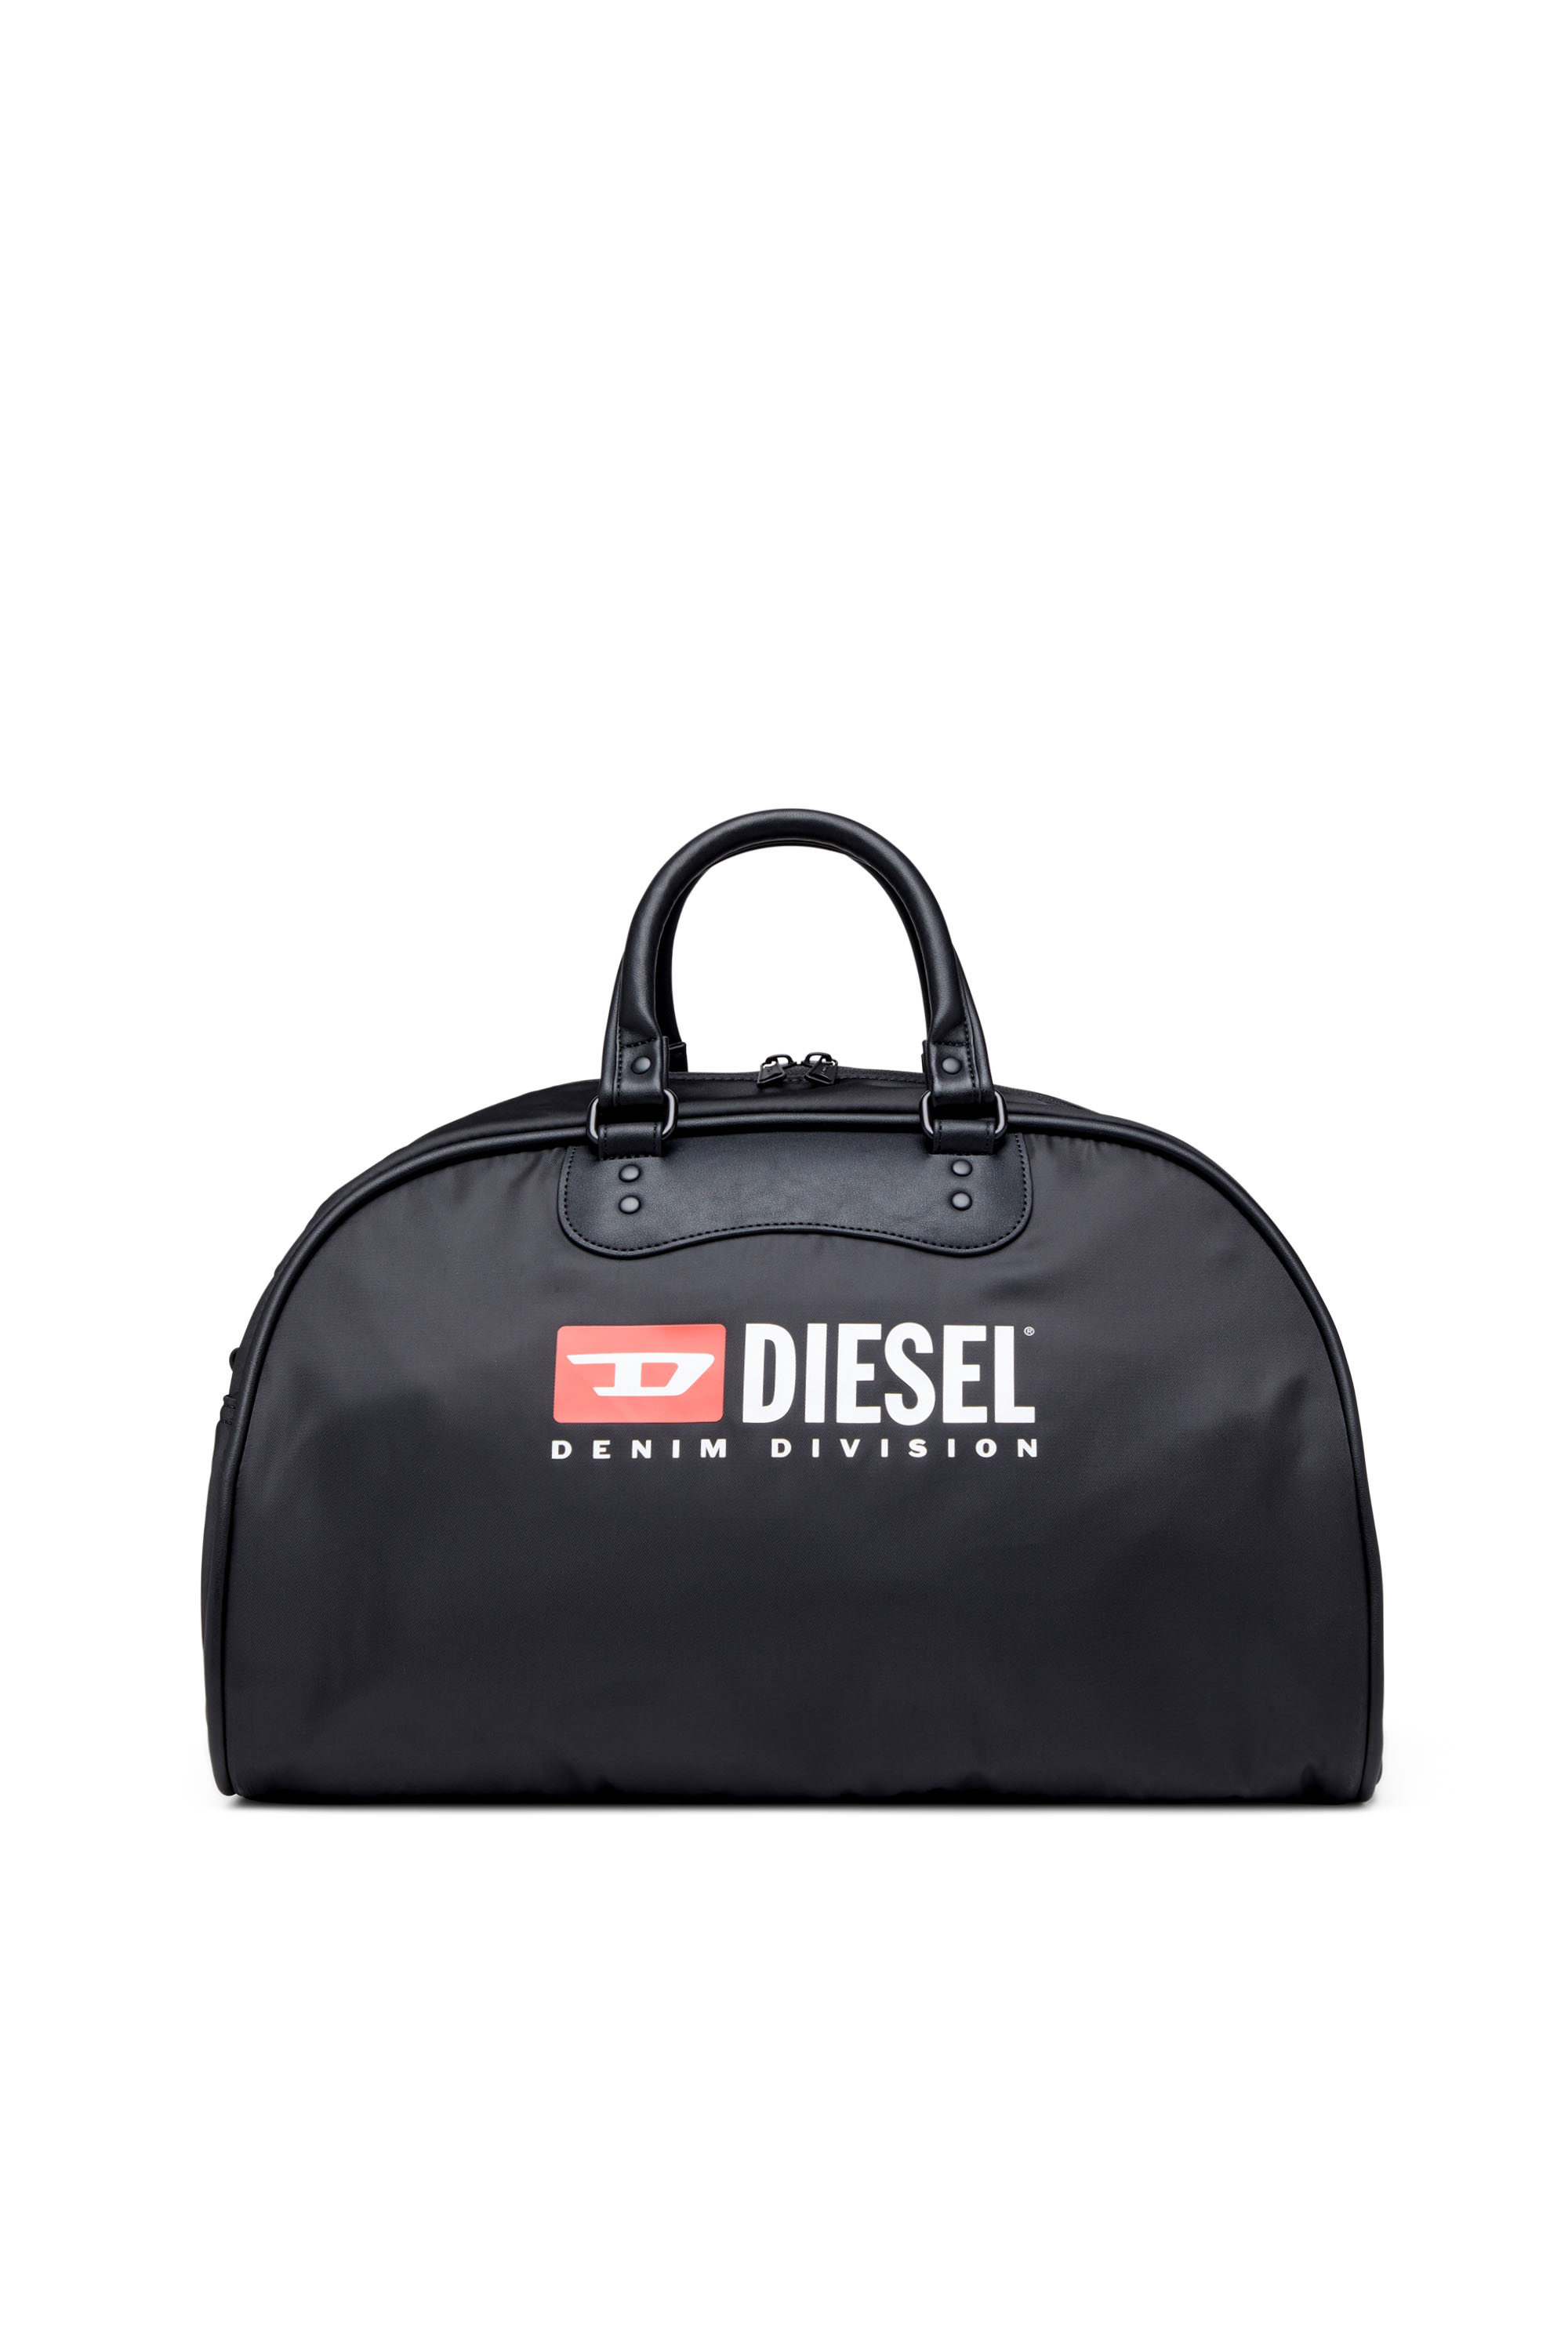 Diesel - RINKE DUFFLE, Negro - Image 1